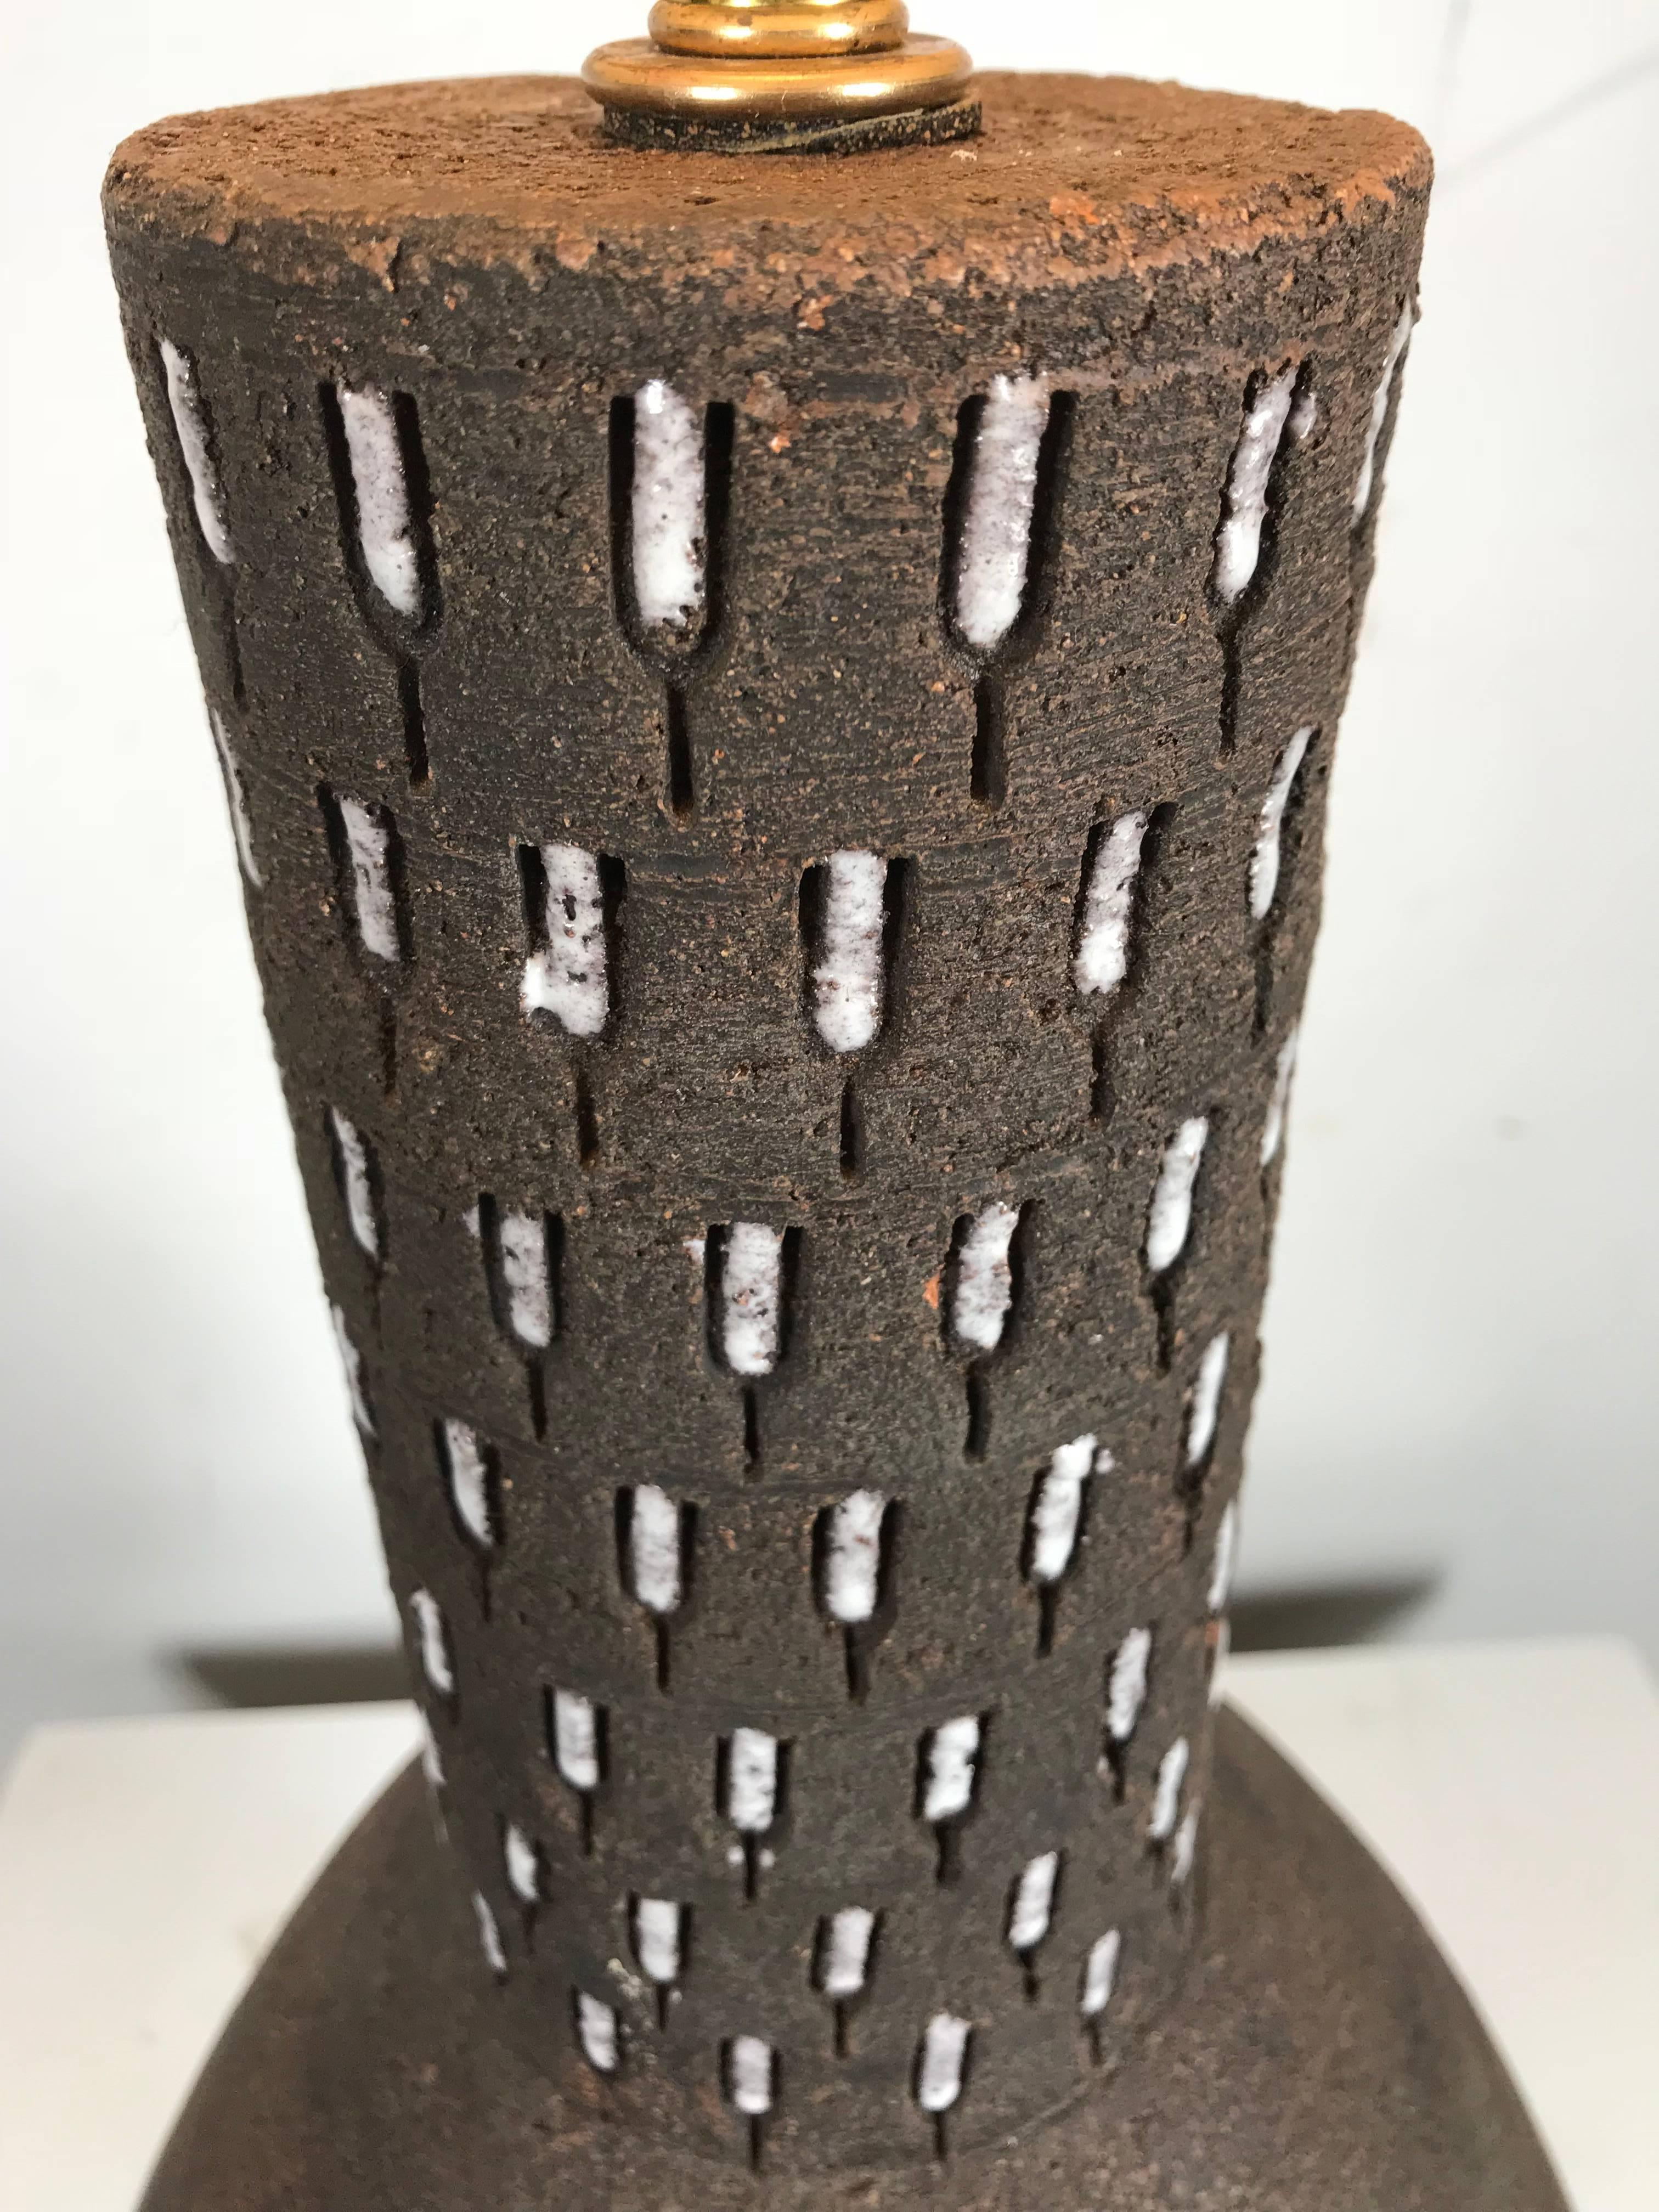 Elusive Lightolier Keramik und Messing Tischlampe, italienische Keramik zugeschrieben Gerald Thurston, atemberaubende modernistische dekorative italienische Keramik Gefäß auf atomisch geformten Messing Basis.